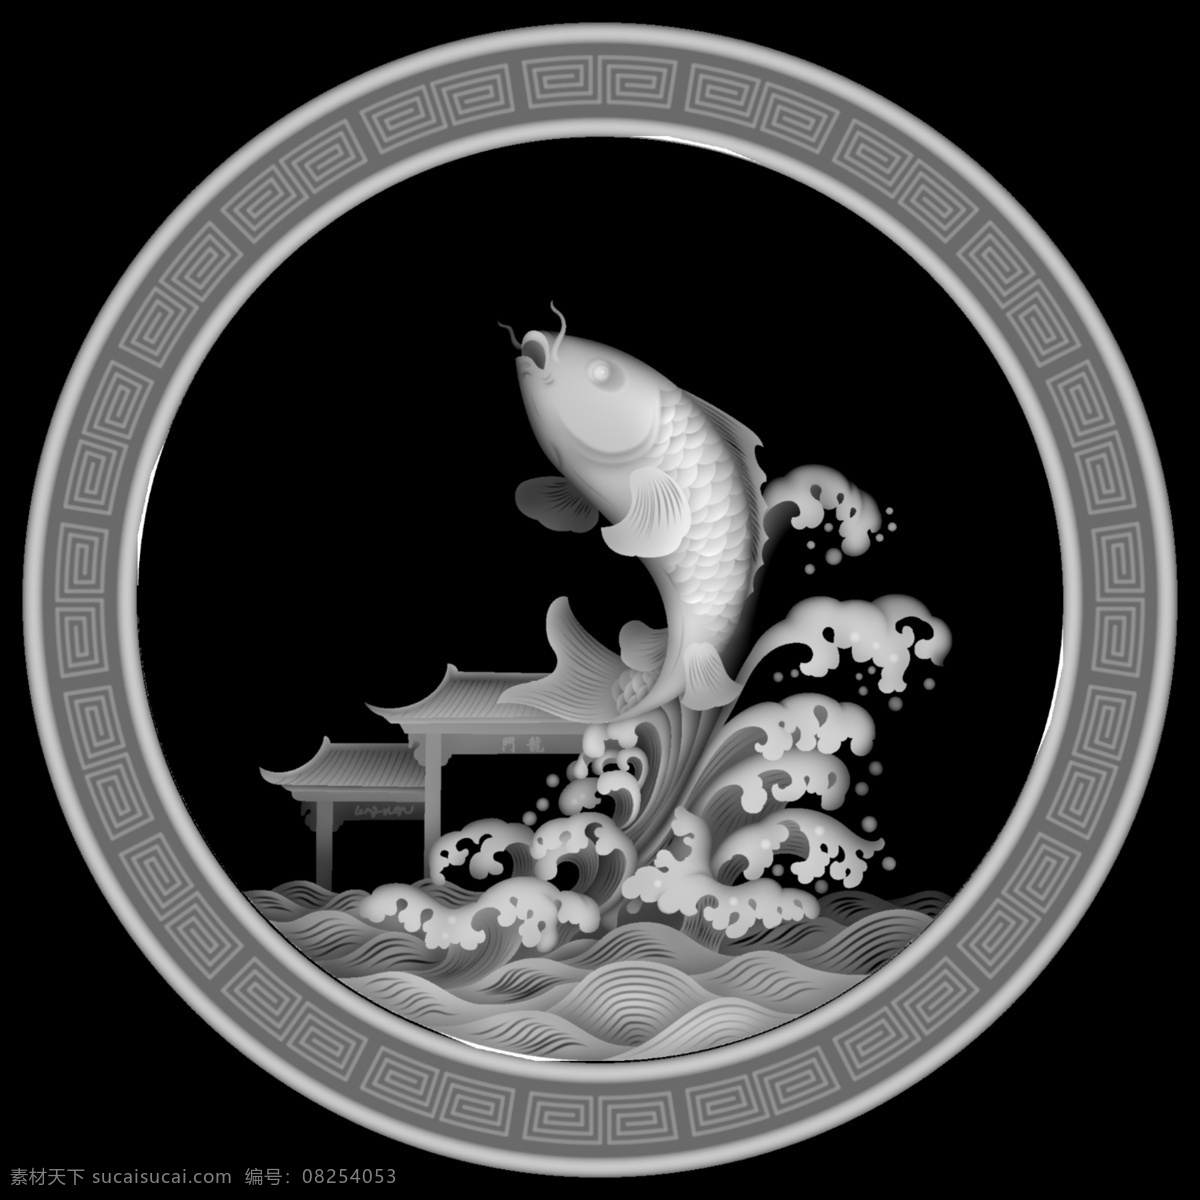 鱼灰度 鱼跃龙门灰度 边框灰度 动物灰度 鱼图片 水灰度 鱼 灰度 文化艺术 传统文化 bmp